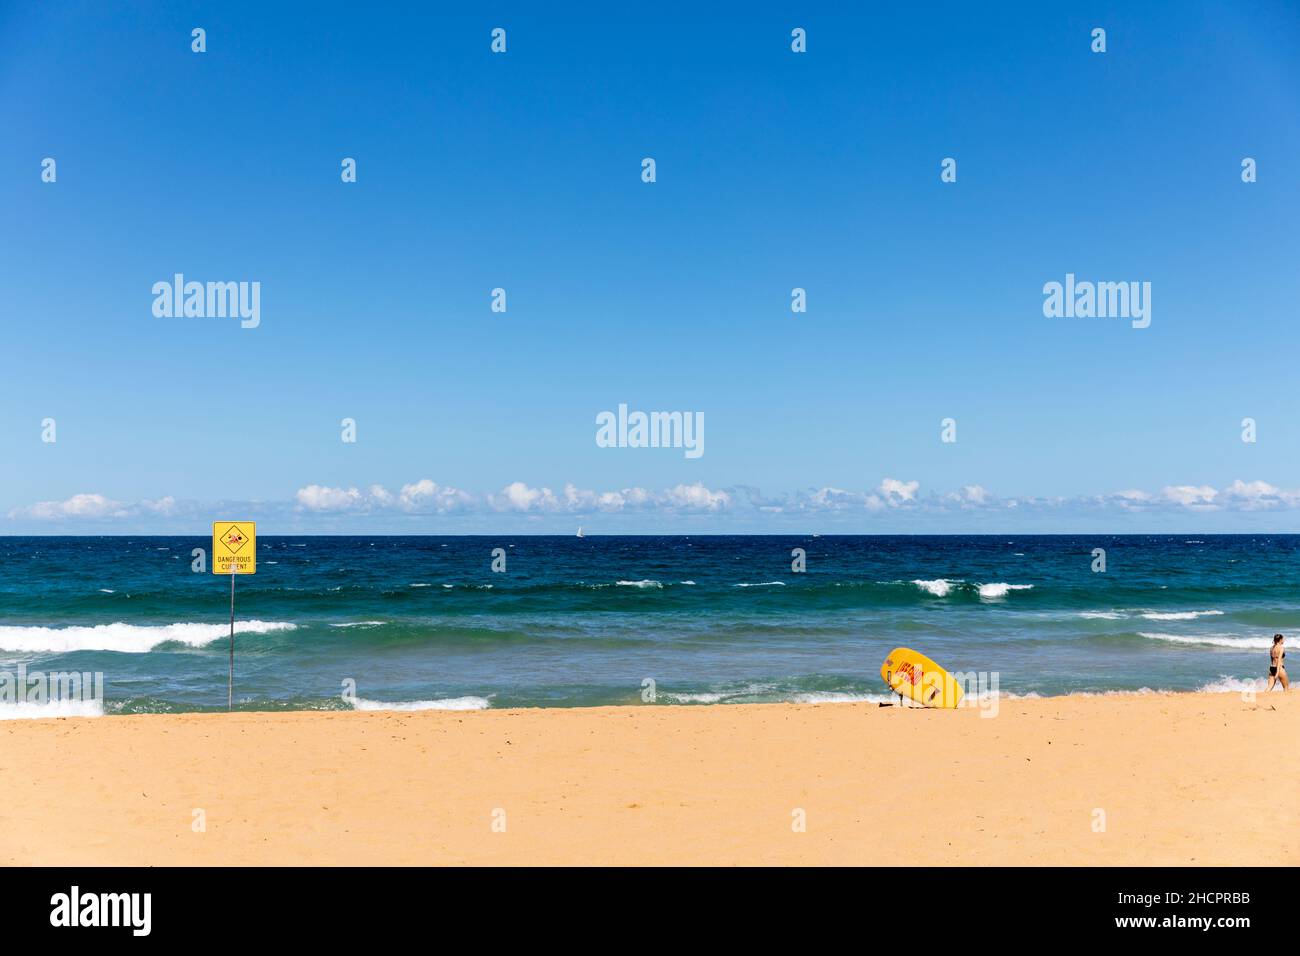 Gefahr am Palm Beach in Sydney, Schild weist auf gefährliche Strömung hin und halten Sie sich aus dem Wasser, Sydney, NSW, Australien Stockfoto